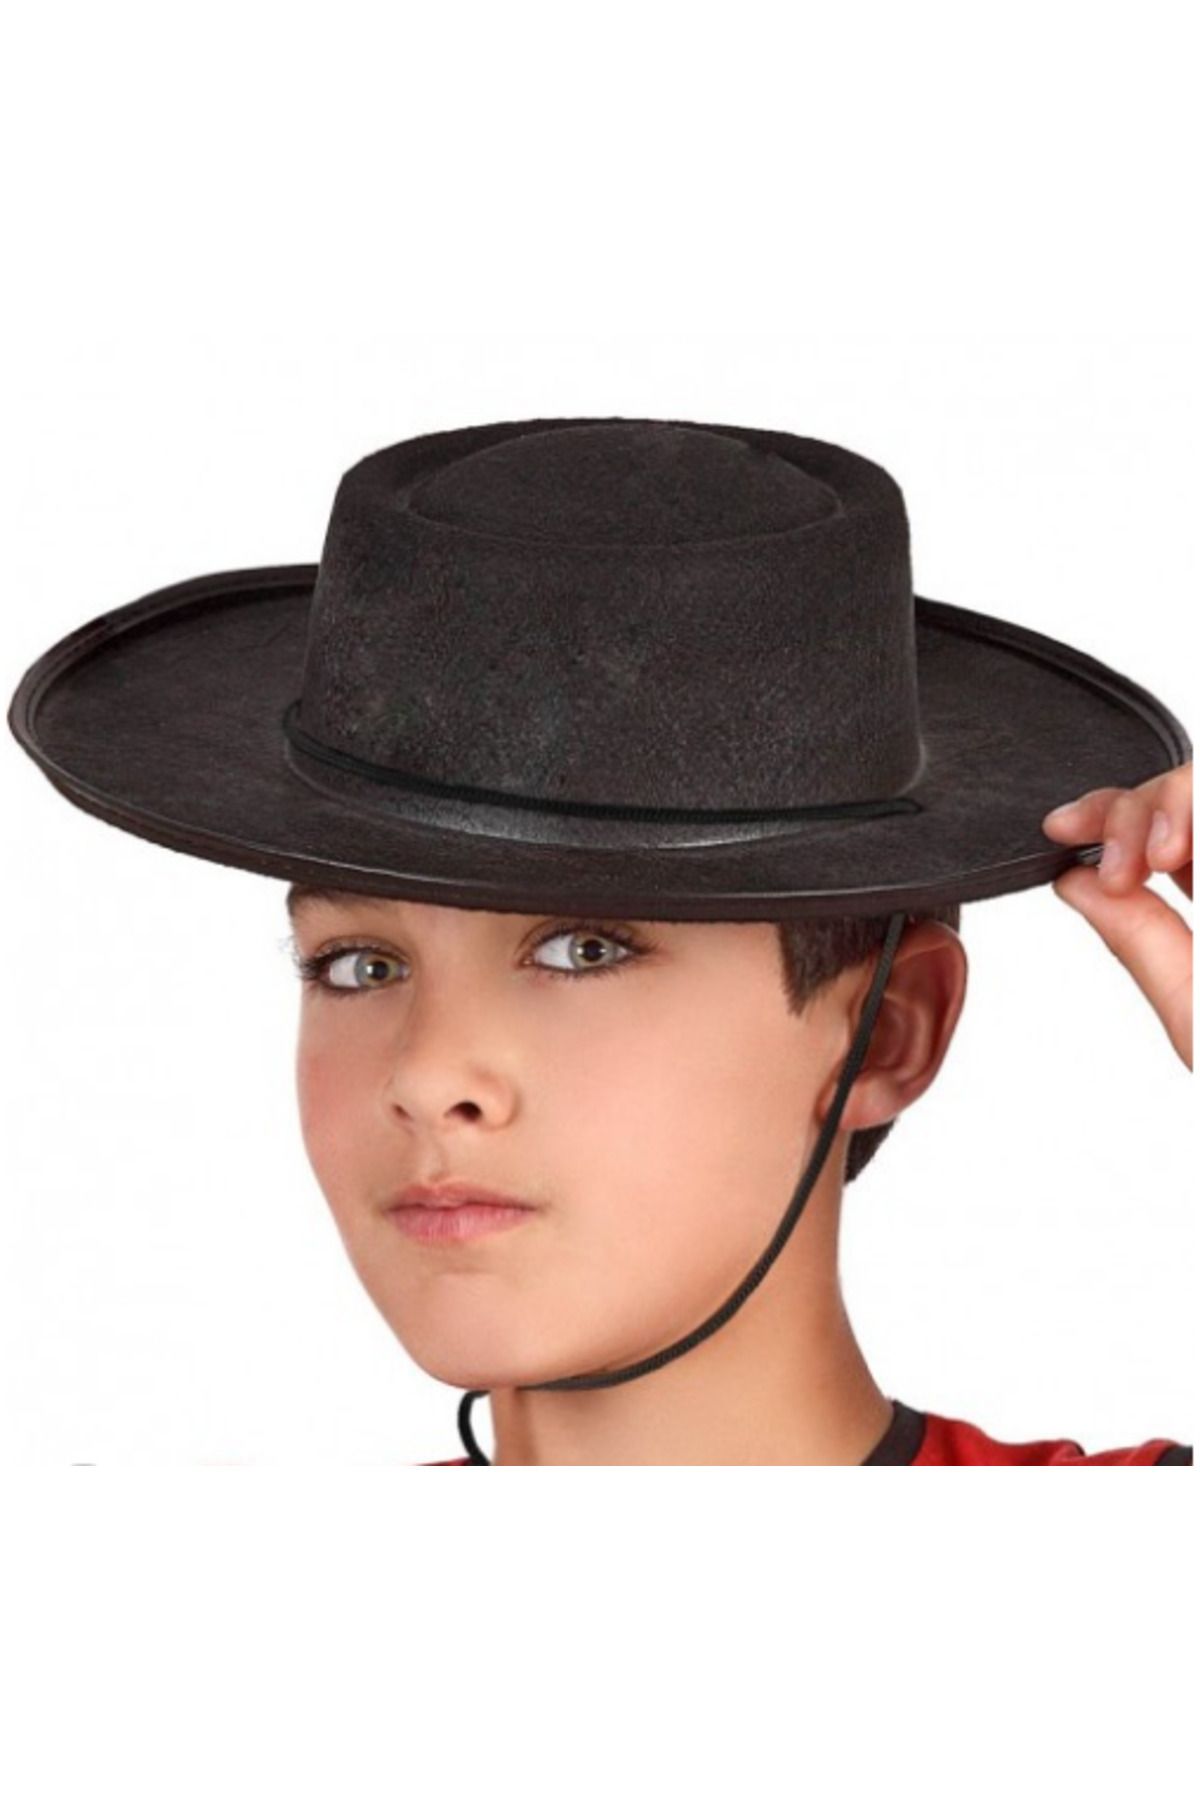 VillU CLZ192 Siyah Renk Keçe Flamenko Şapkası Çocuk Boy (4172)